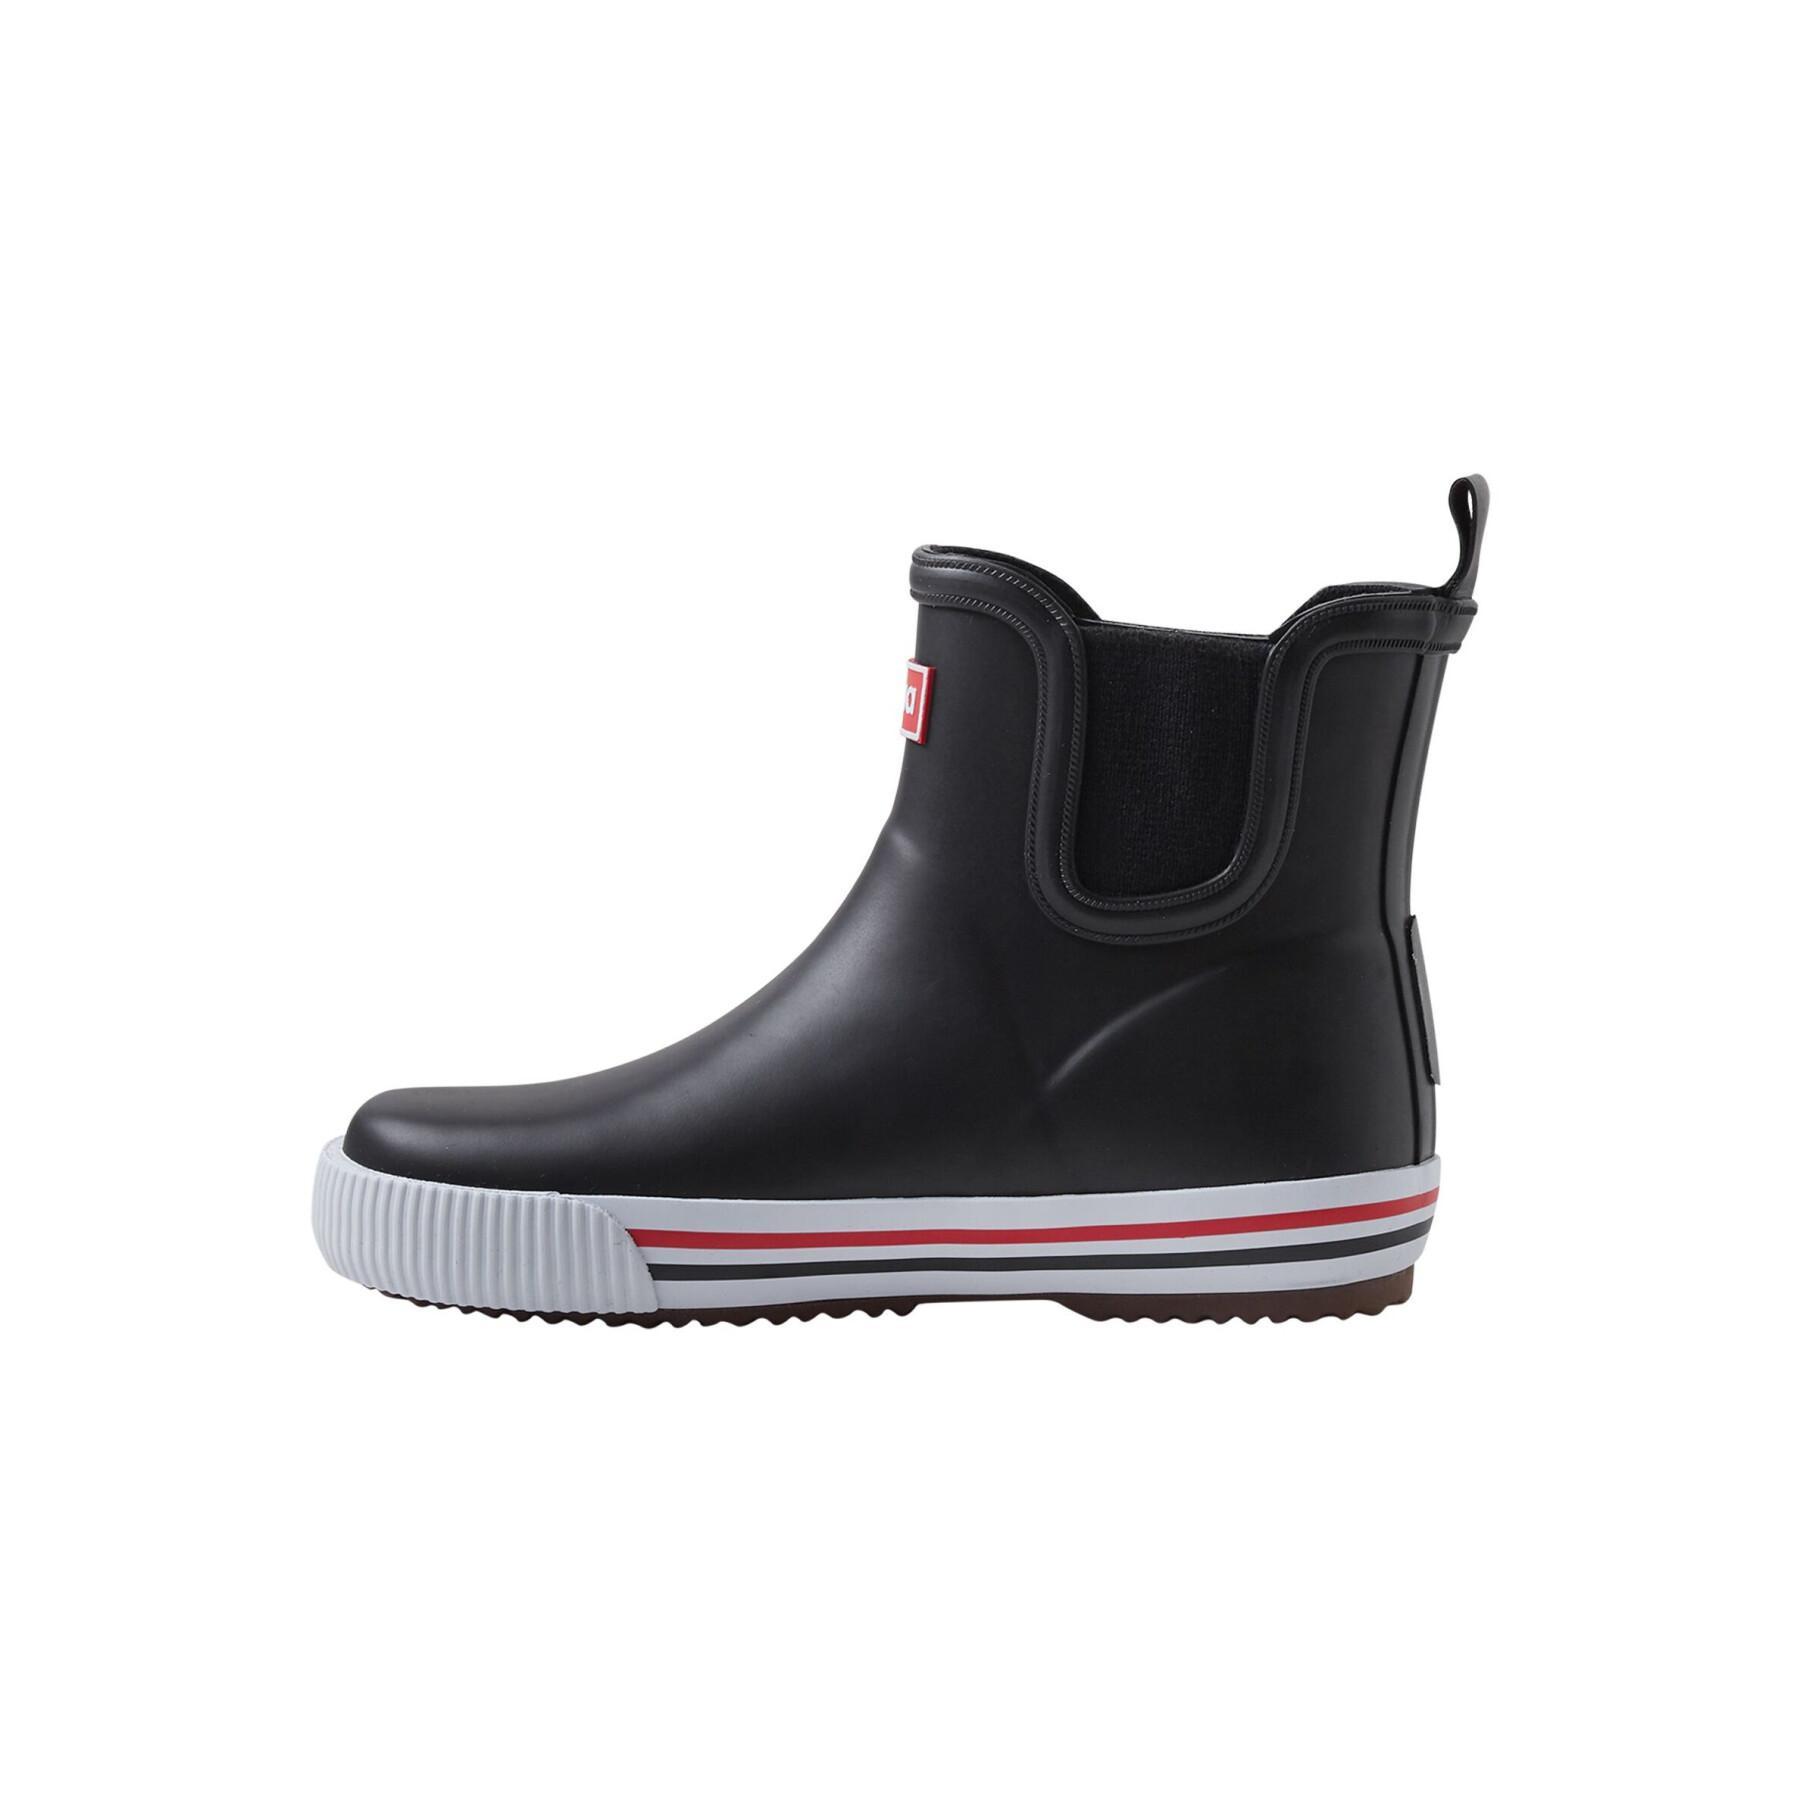 Children's rain boots Reima Ankles